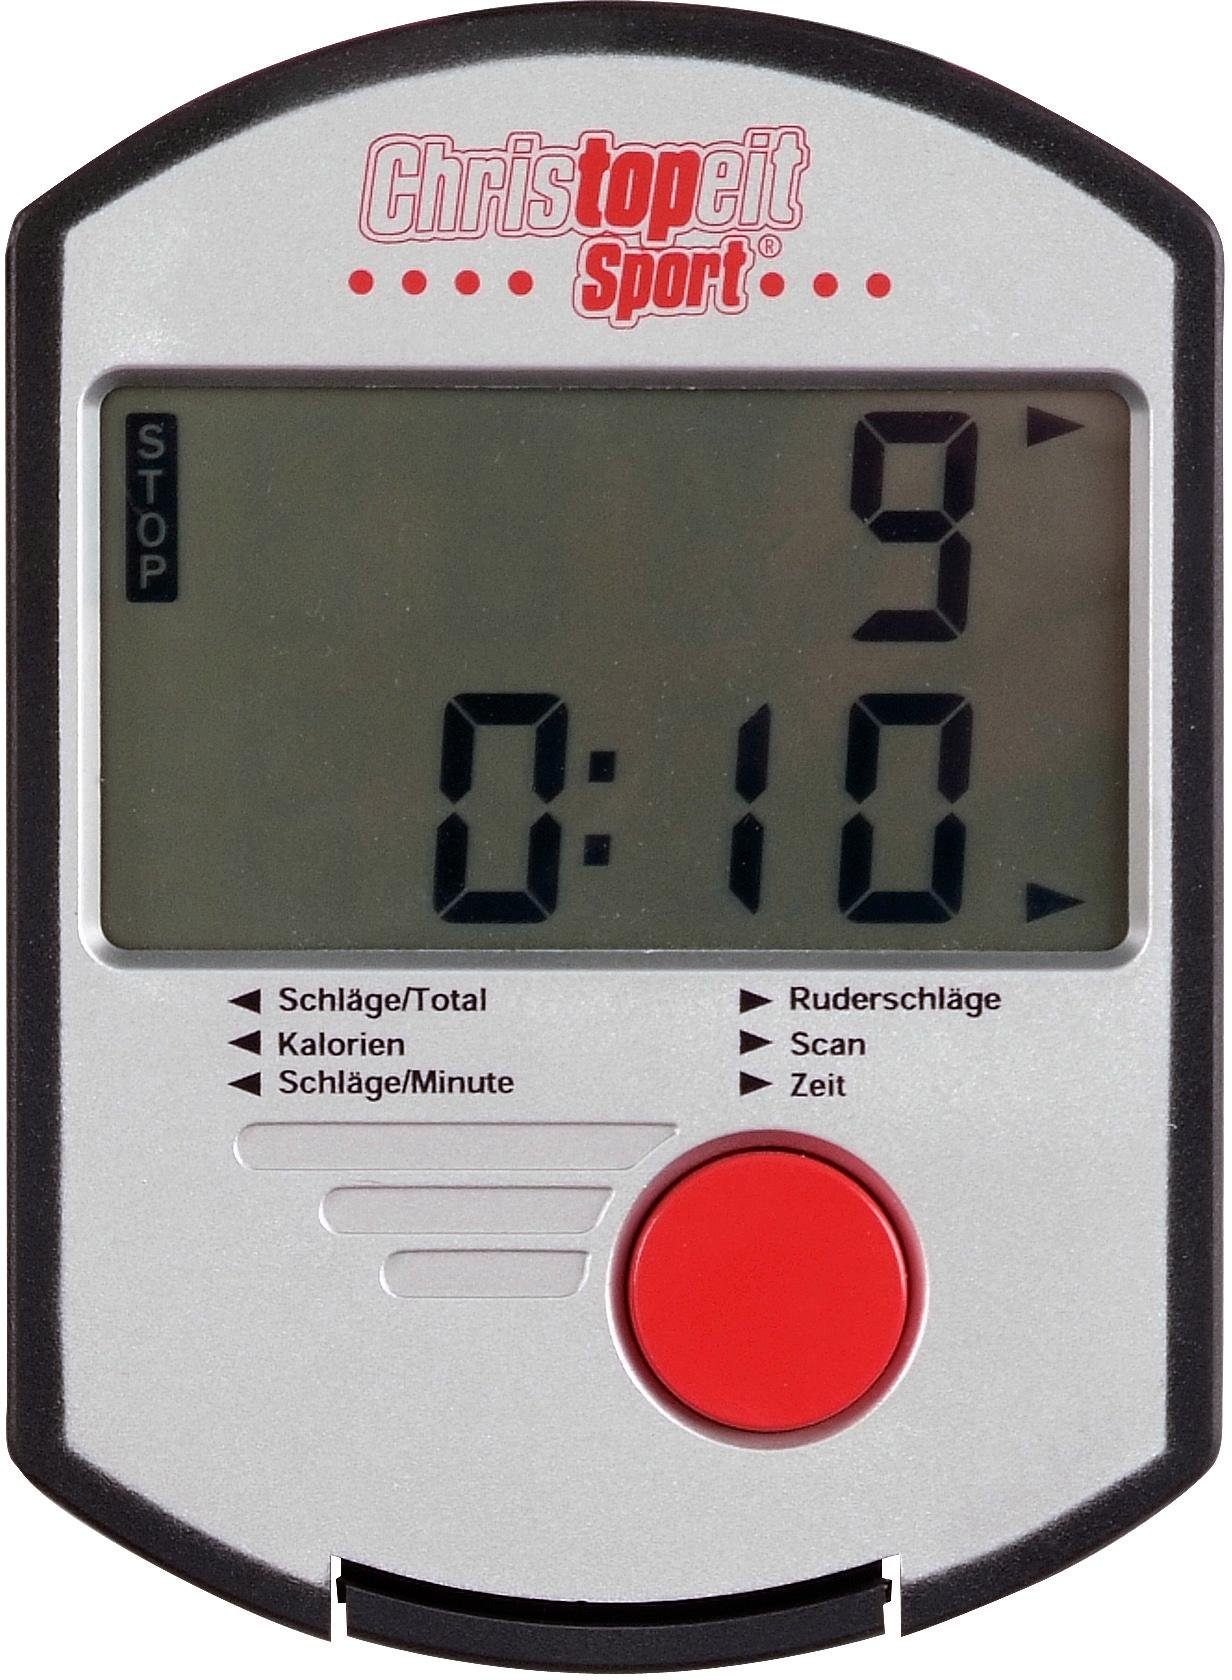 Christopeit Sport® Rudergerät Cambridge II Ruderschiene Edition, Black hochklappbar platzsparend